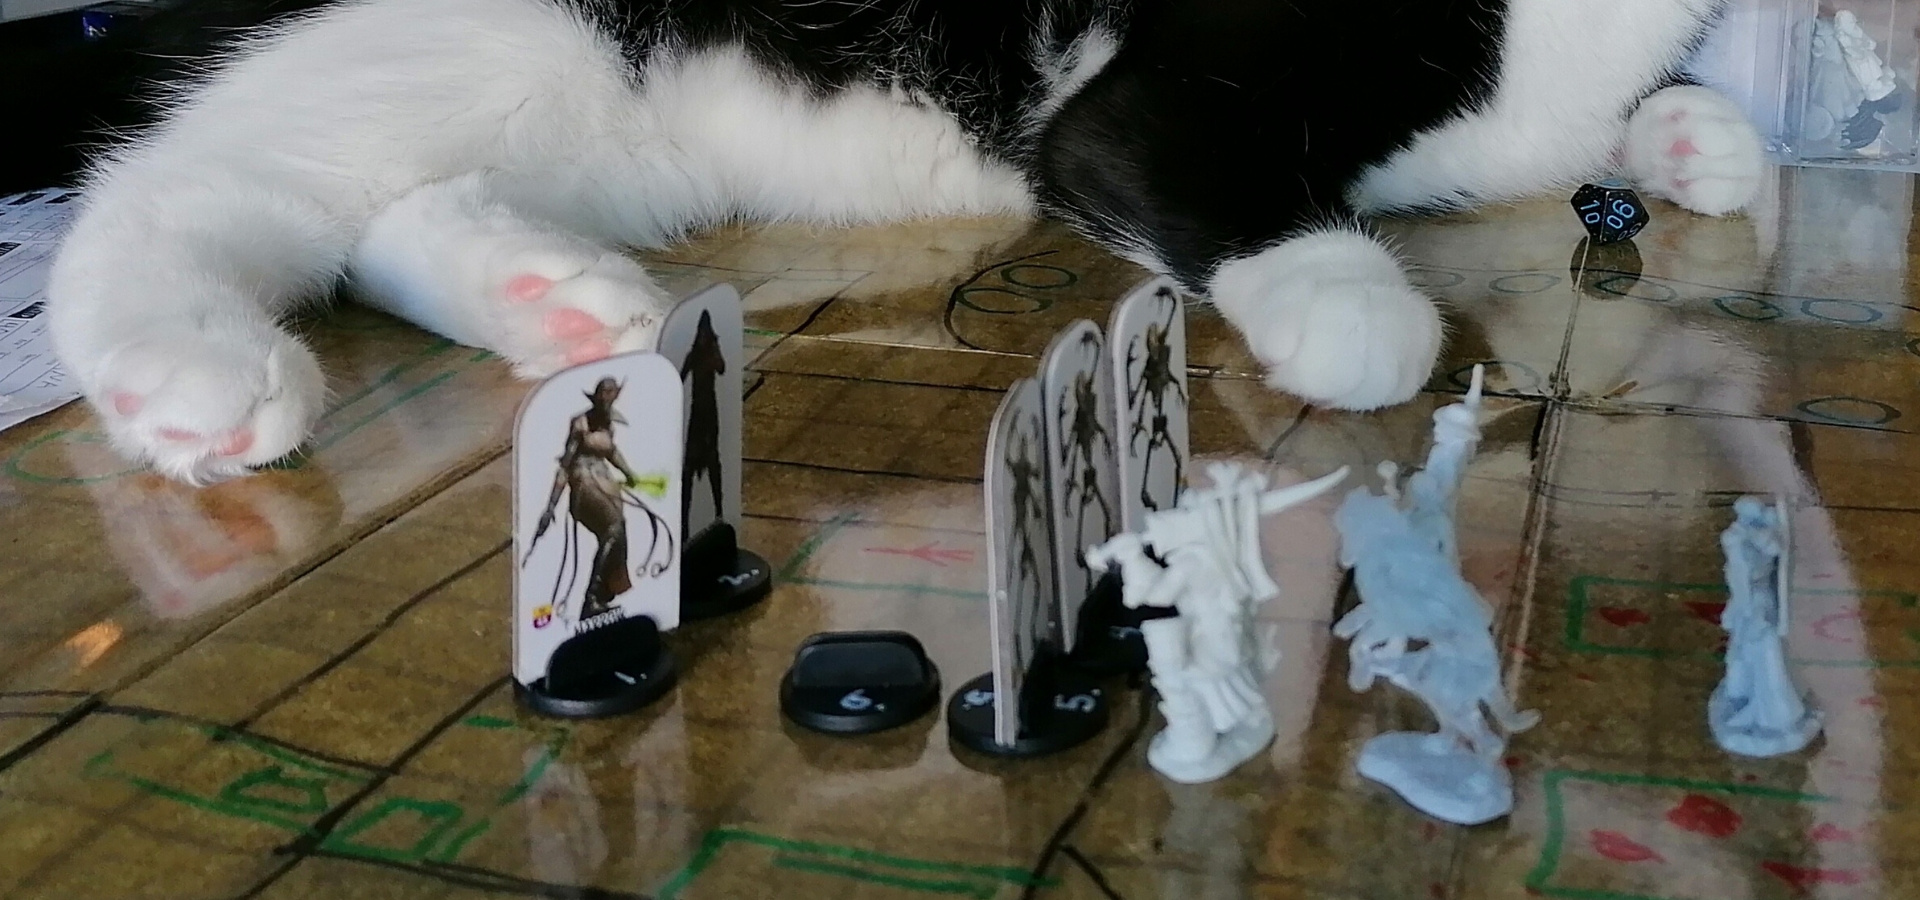 Pöytäroolipeli on käynnissä ja taistelu alkamassa. Esillä on kartta ja figuureja kuvaamassa taustelutilannetta. Taustalla näkyy kissa pelipöydällä.